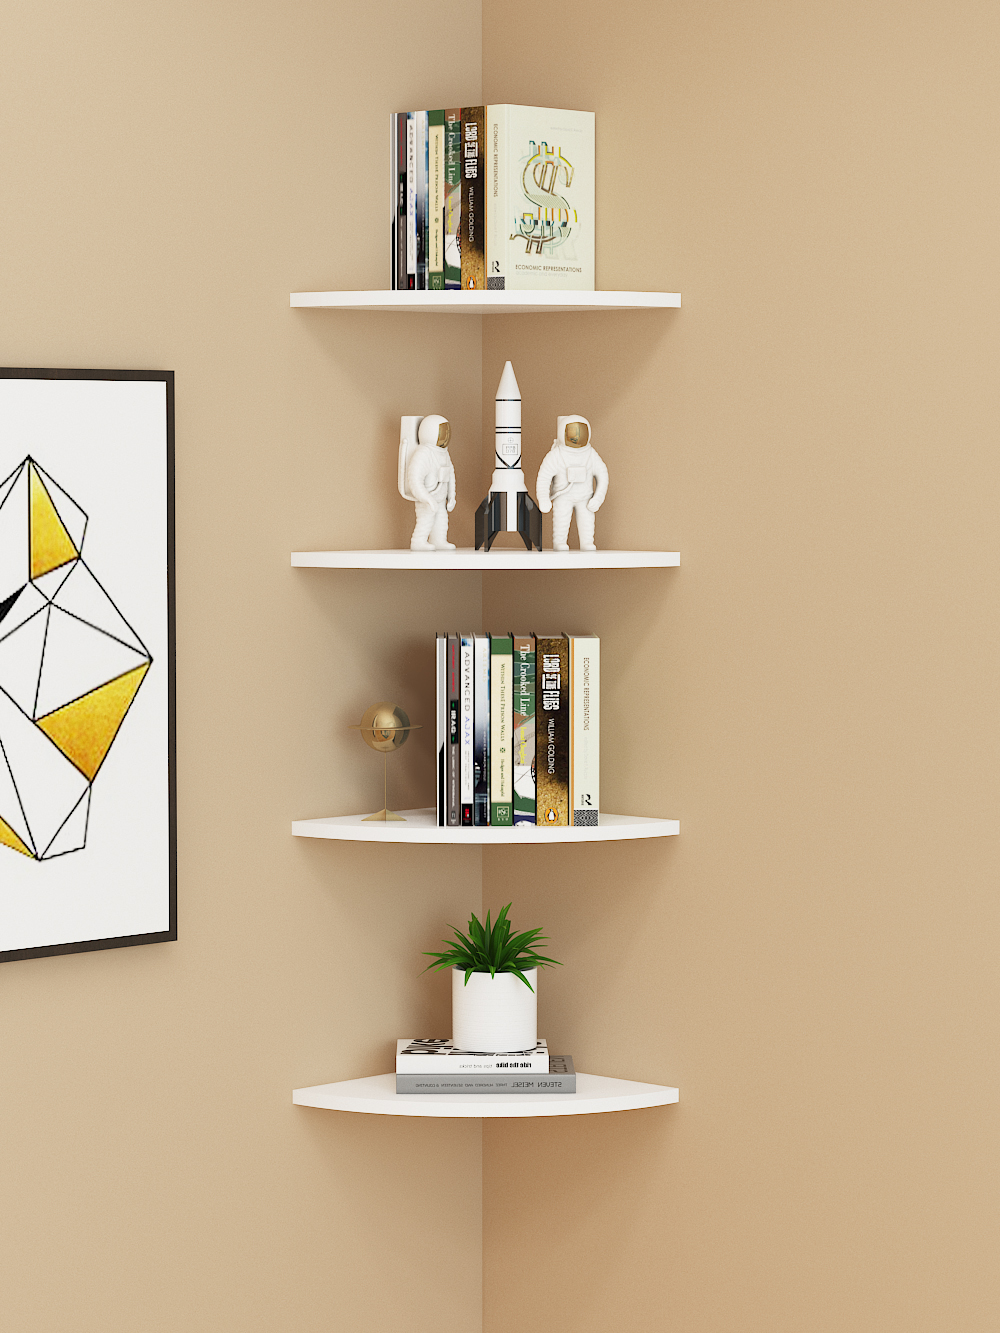 牆角懸空三角形木隔板免打孔安裝簡約現代風格可用於廚房客廳臥室等空間